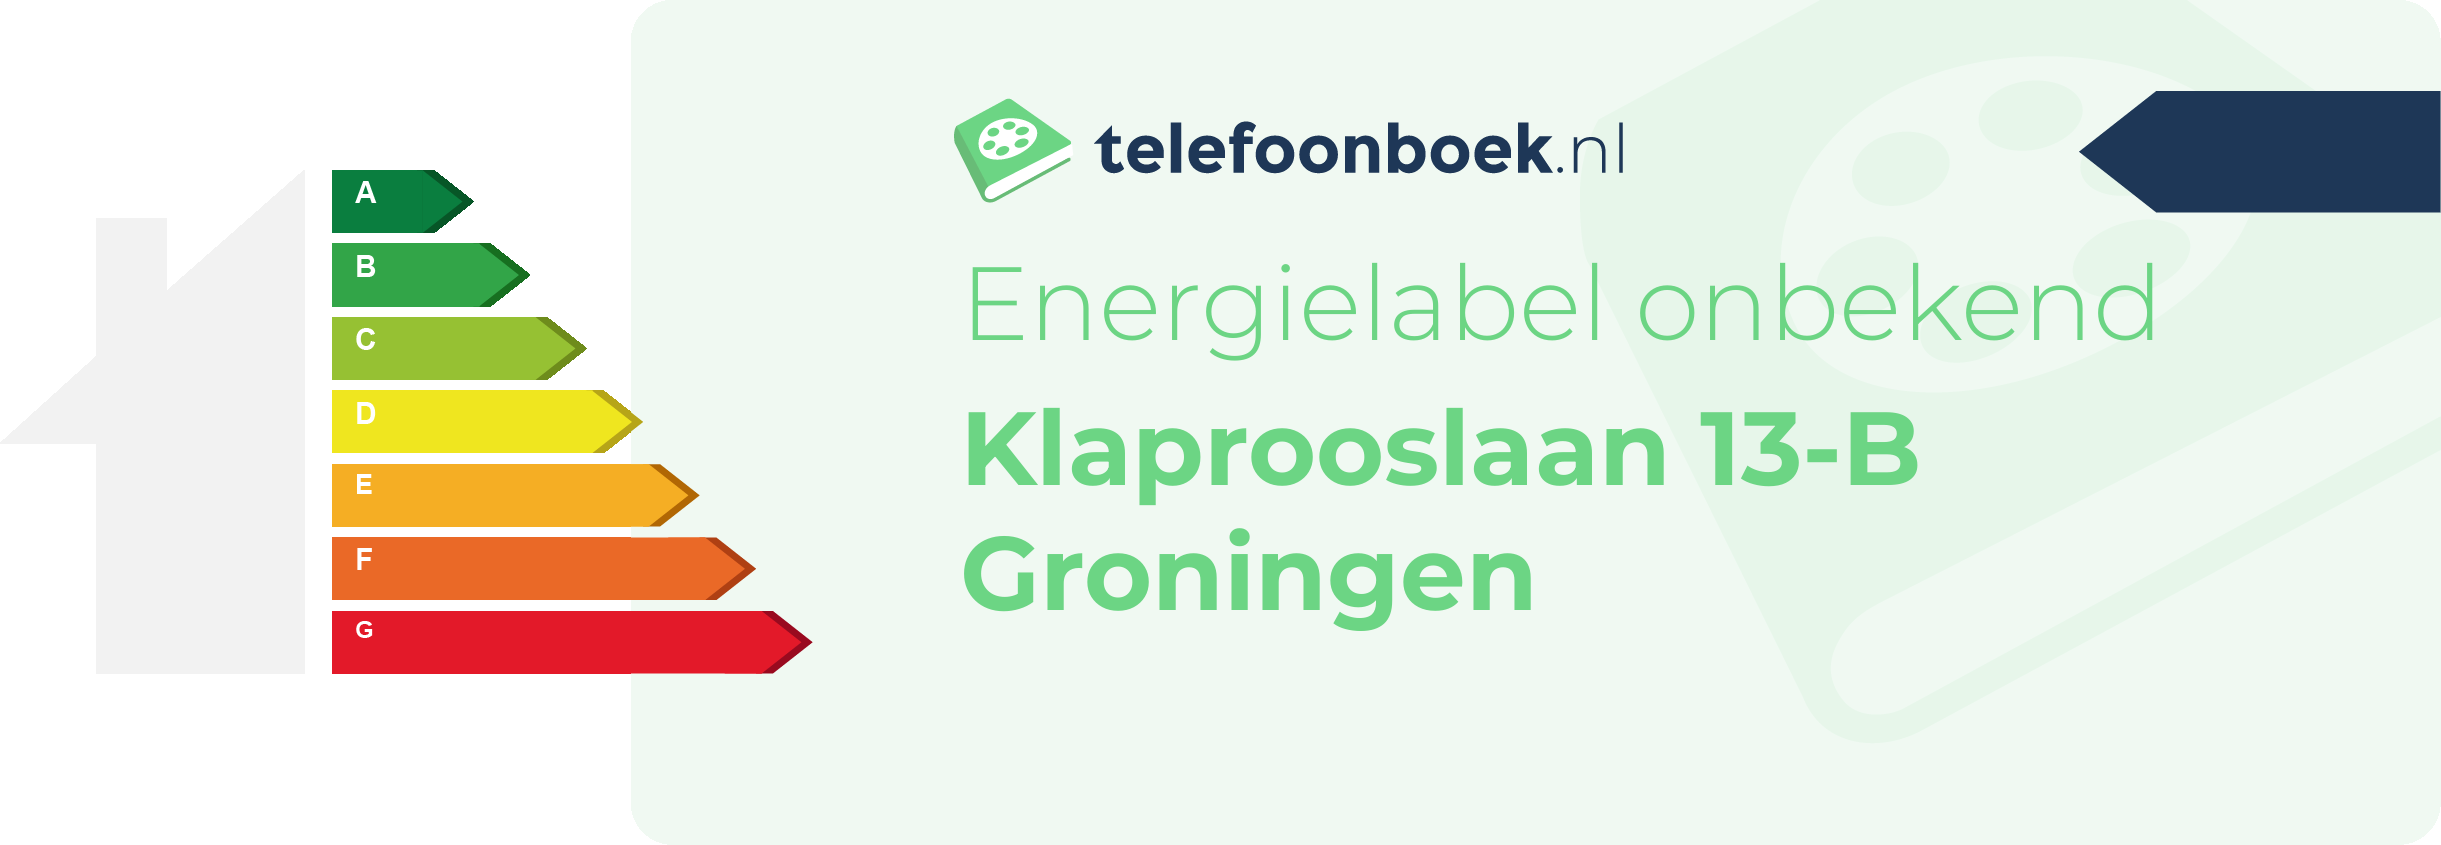 Energielabel Klaprooslaan 13-B Groningen